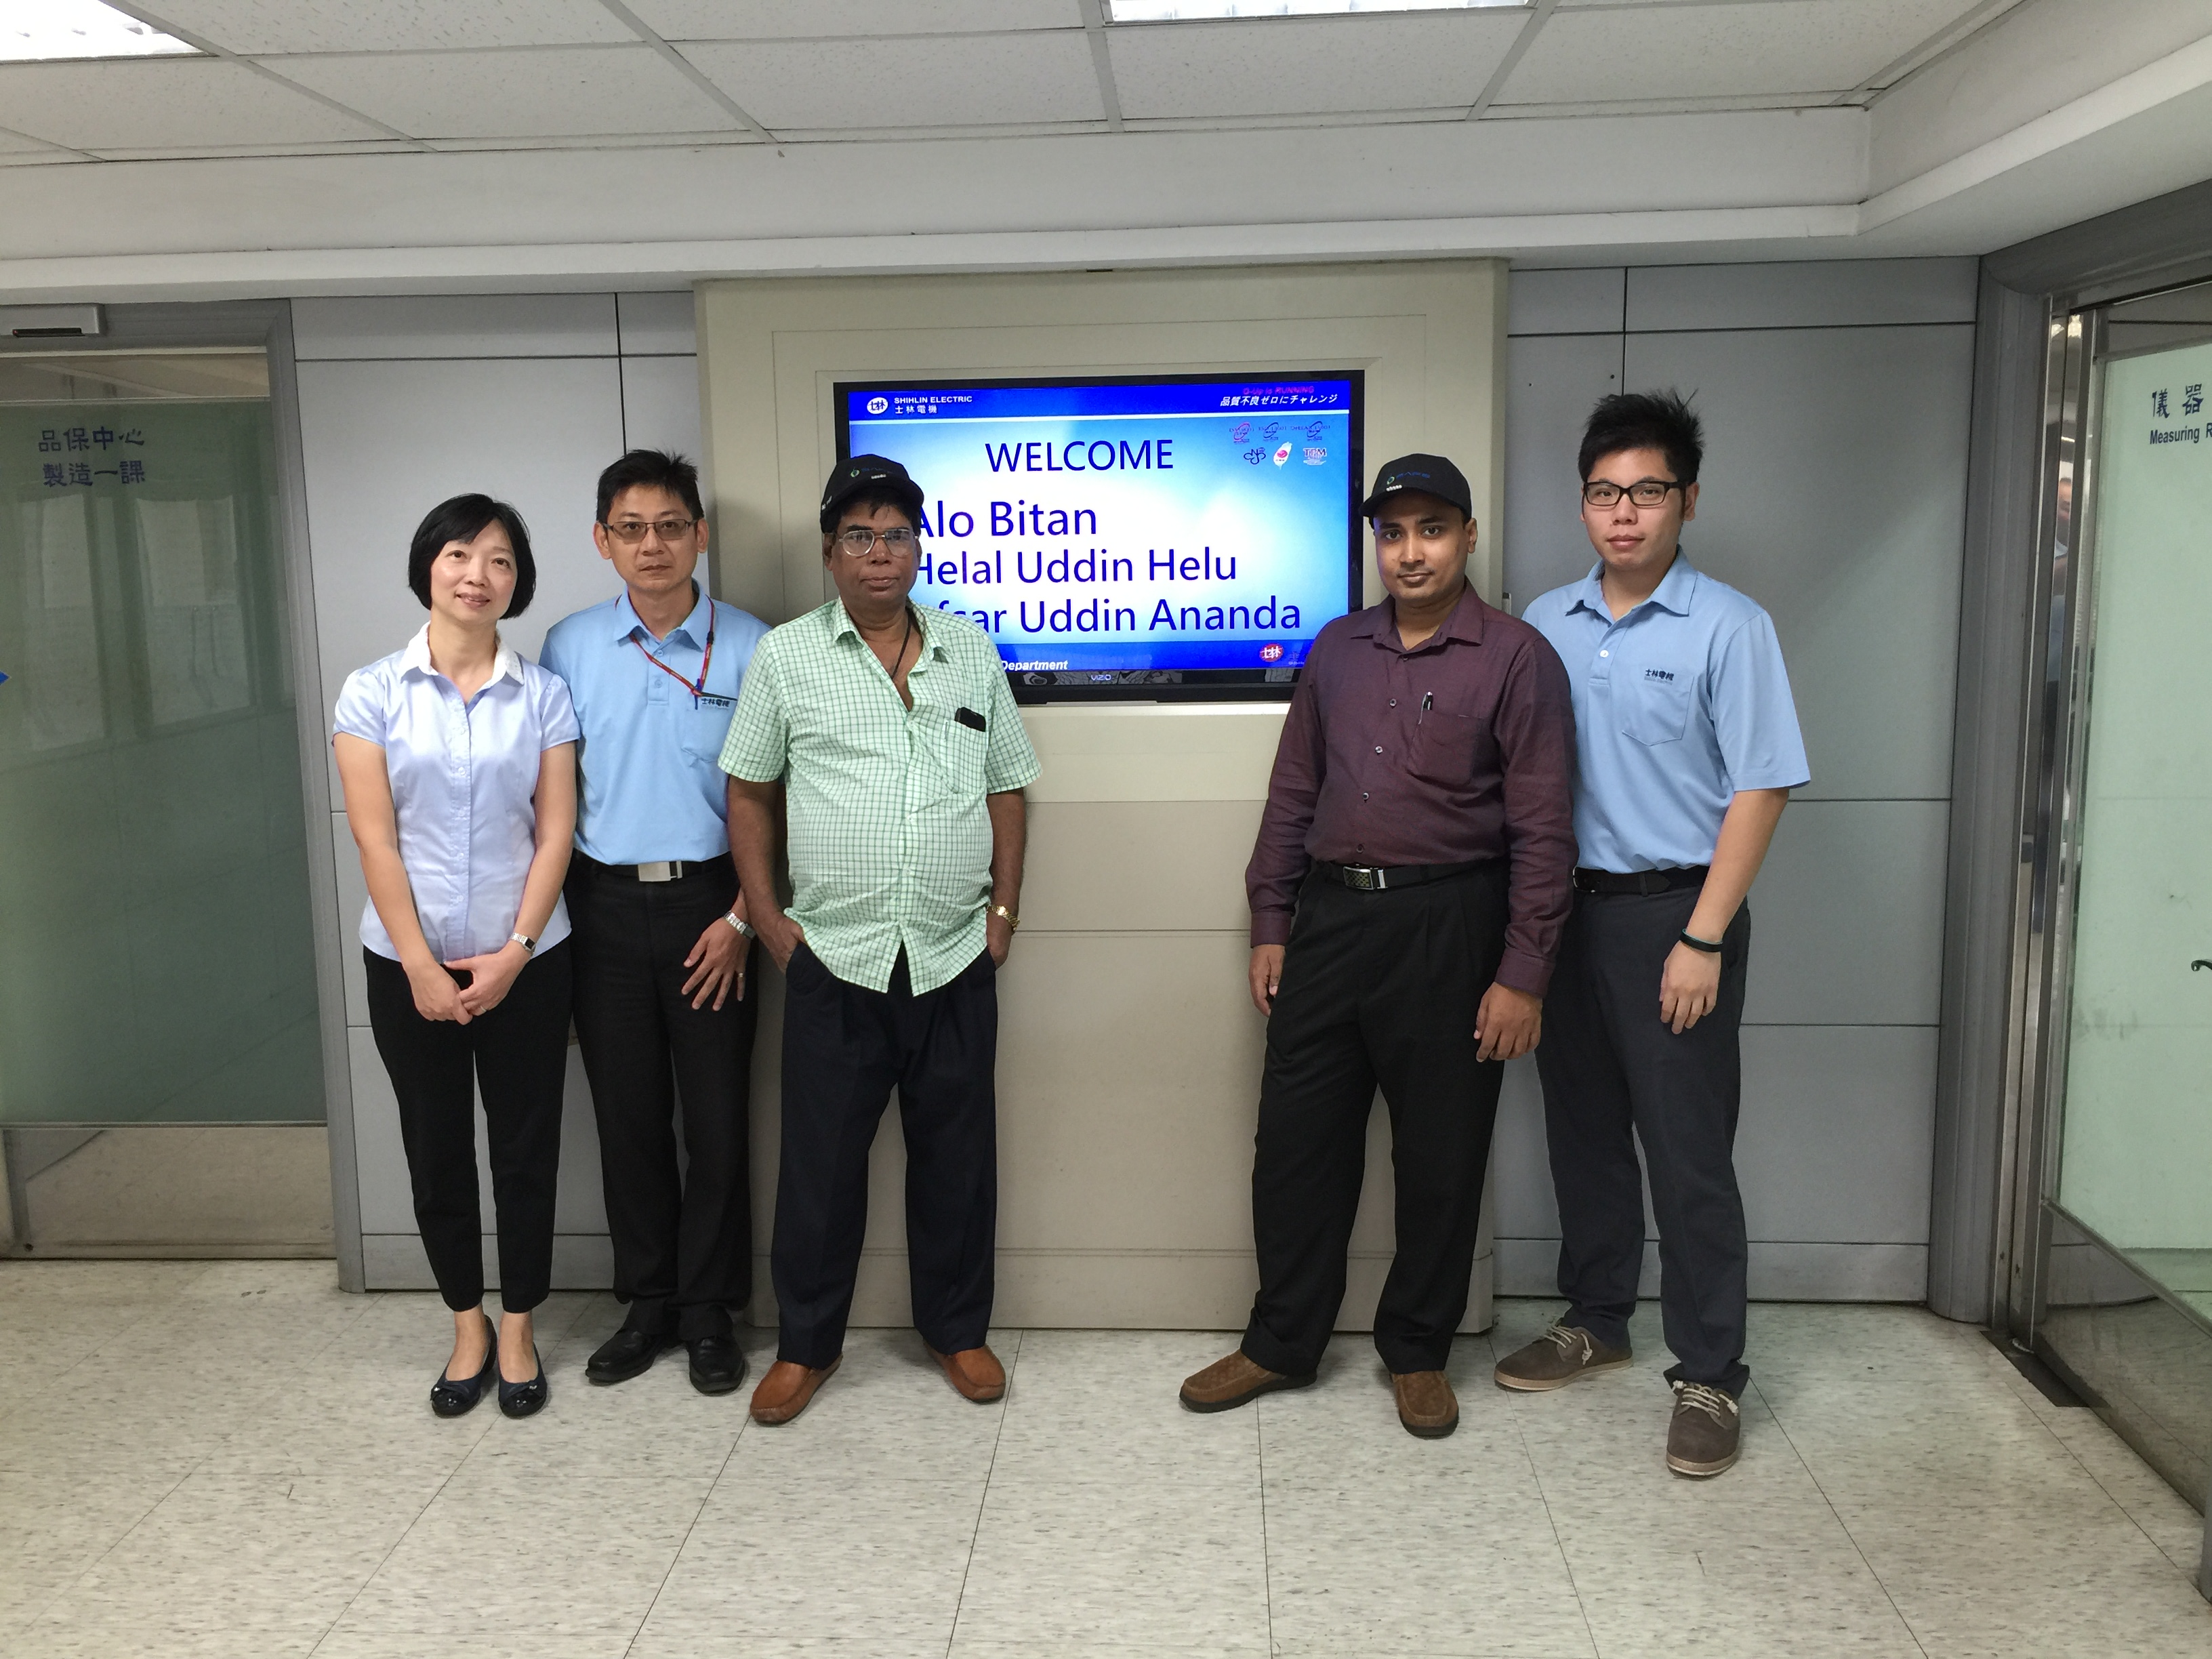 Visita de clientes de Bangladesh a Shihlin Electric